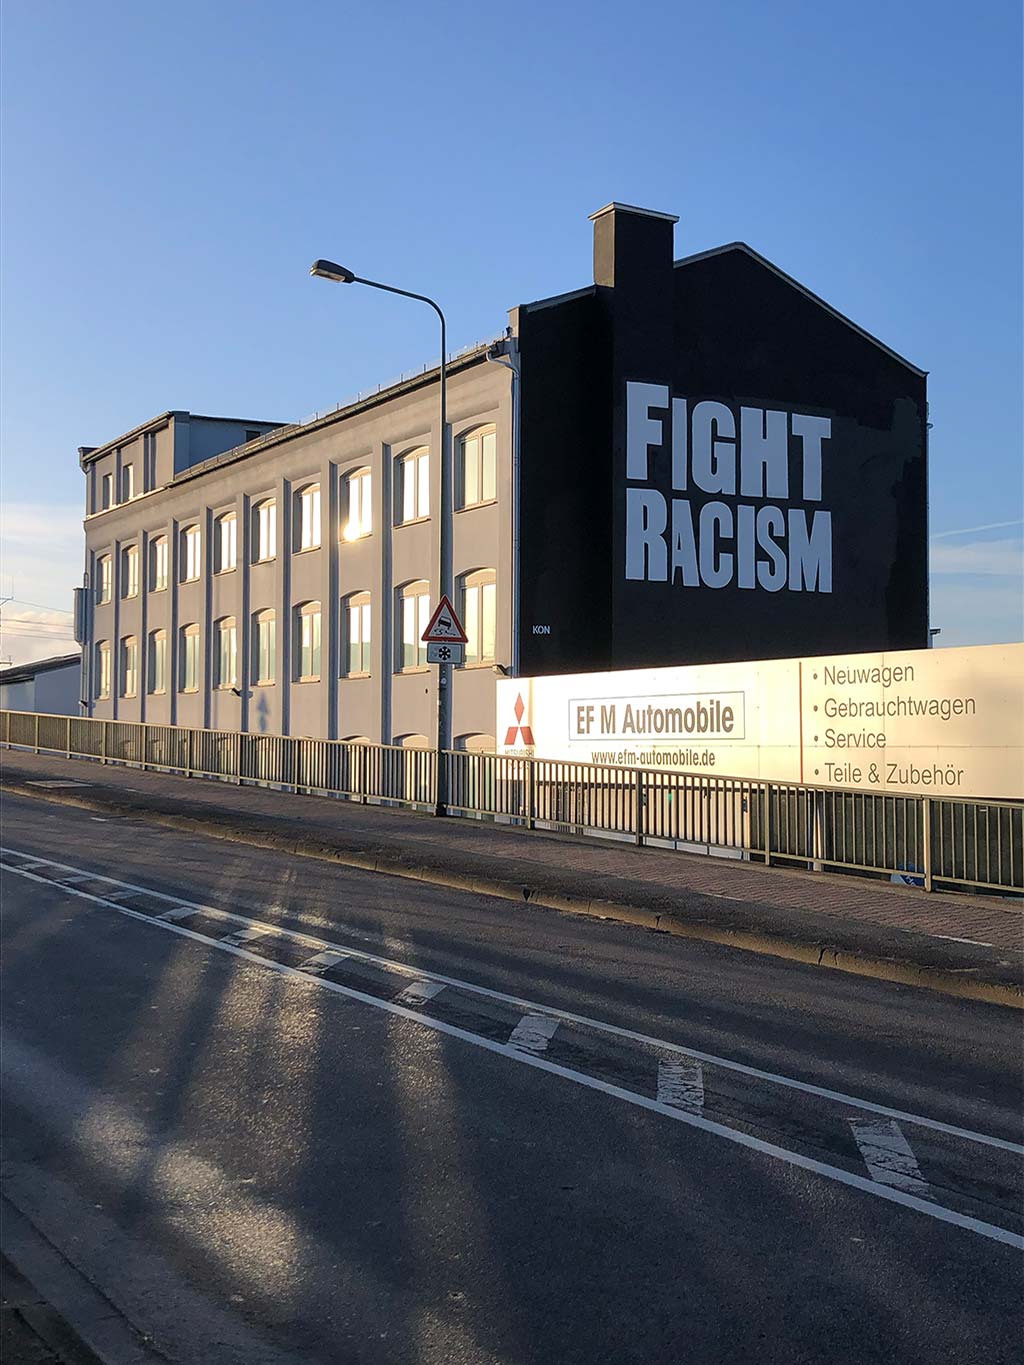 FIGHT RACISM - Mural gegen Rassismus in Frankfurt